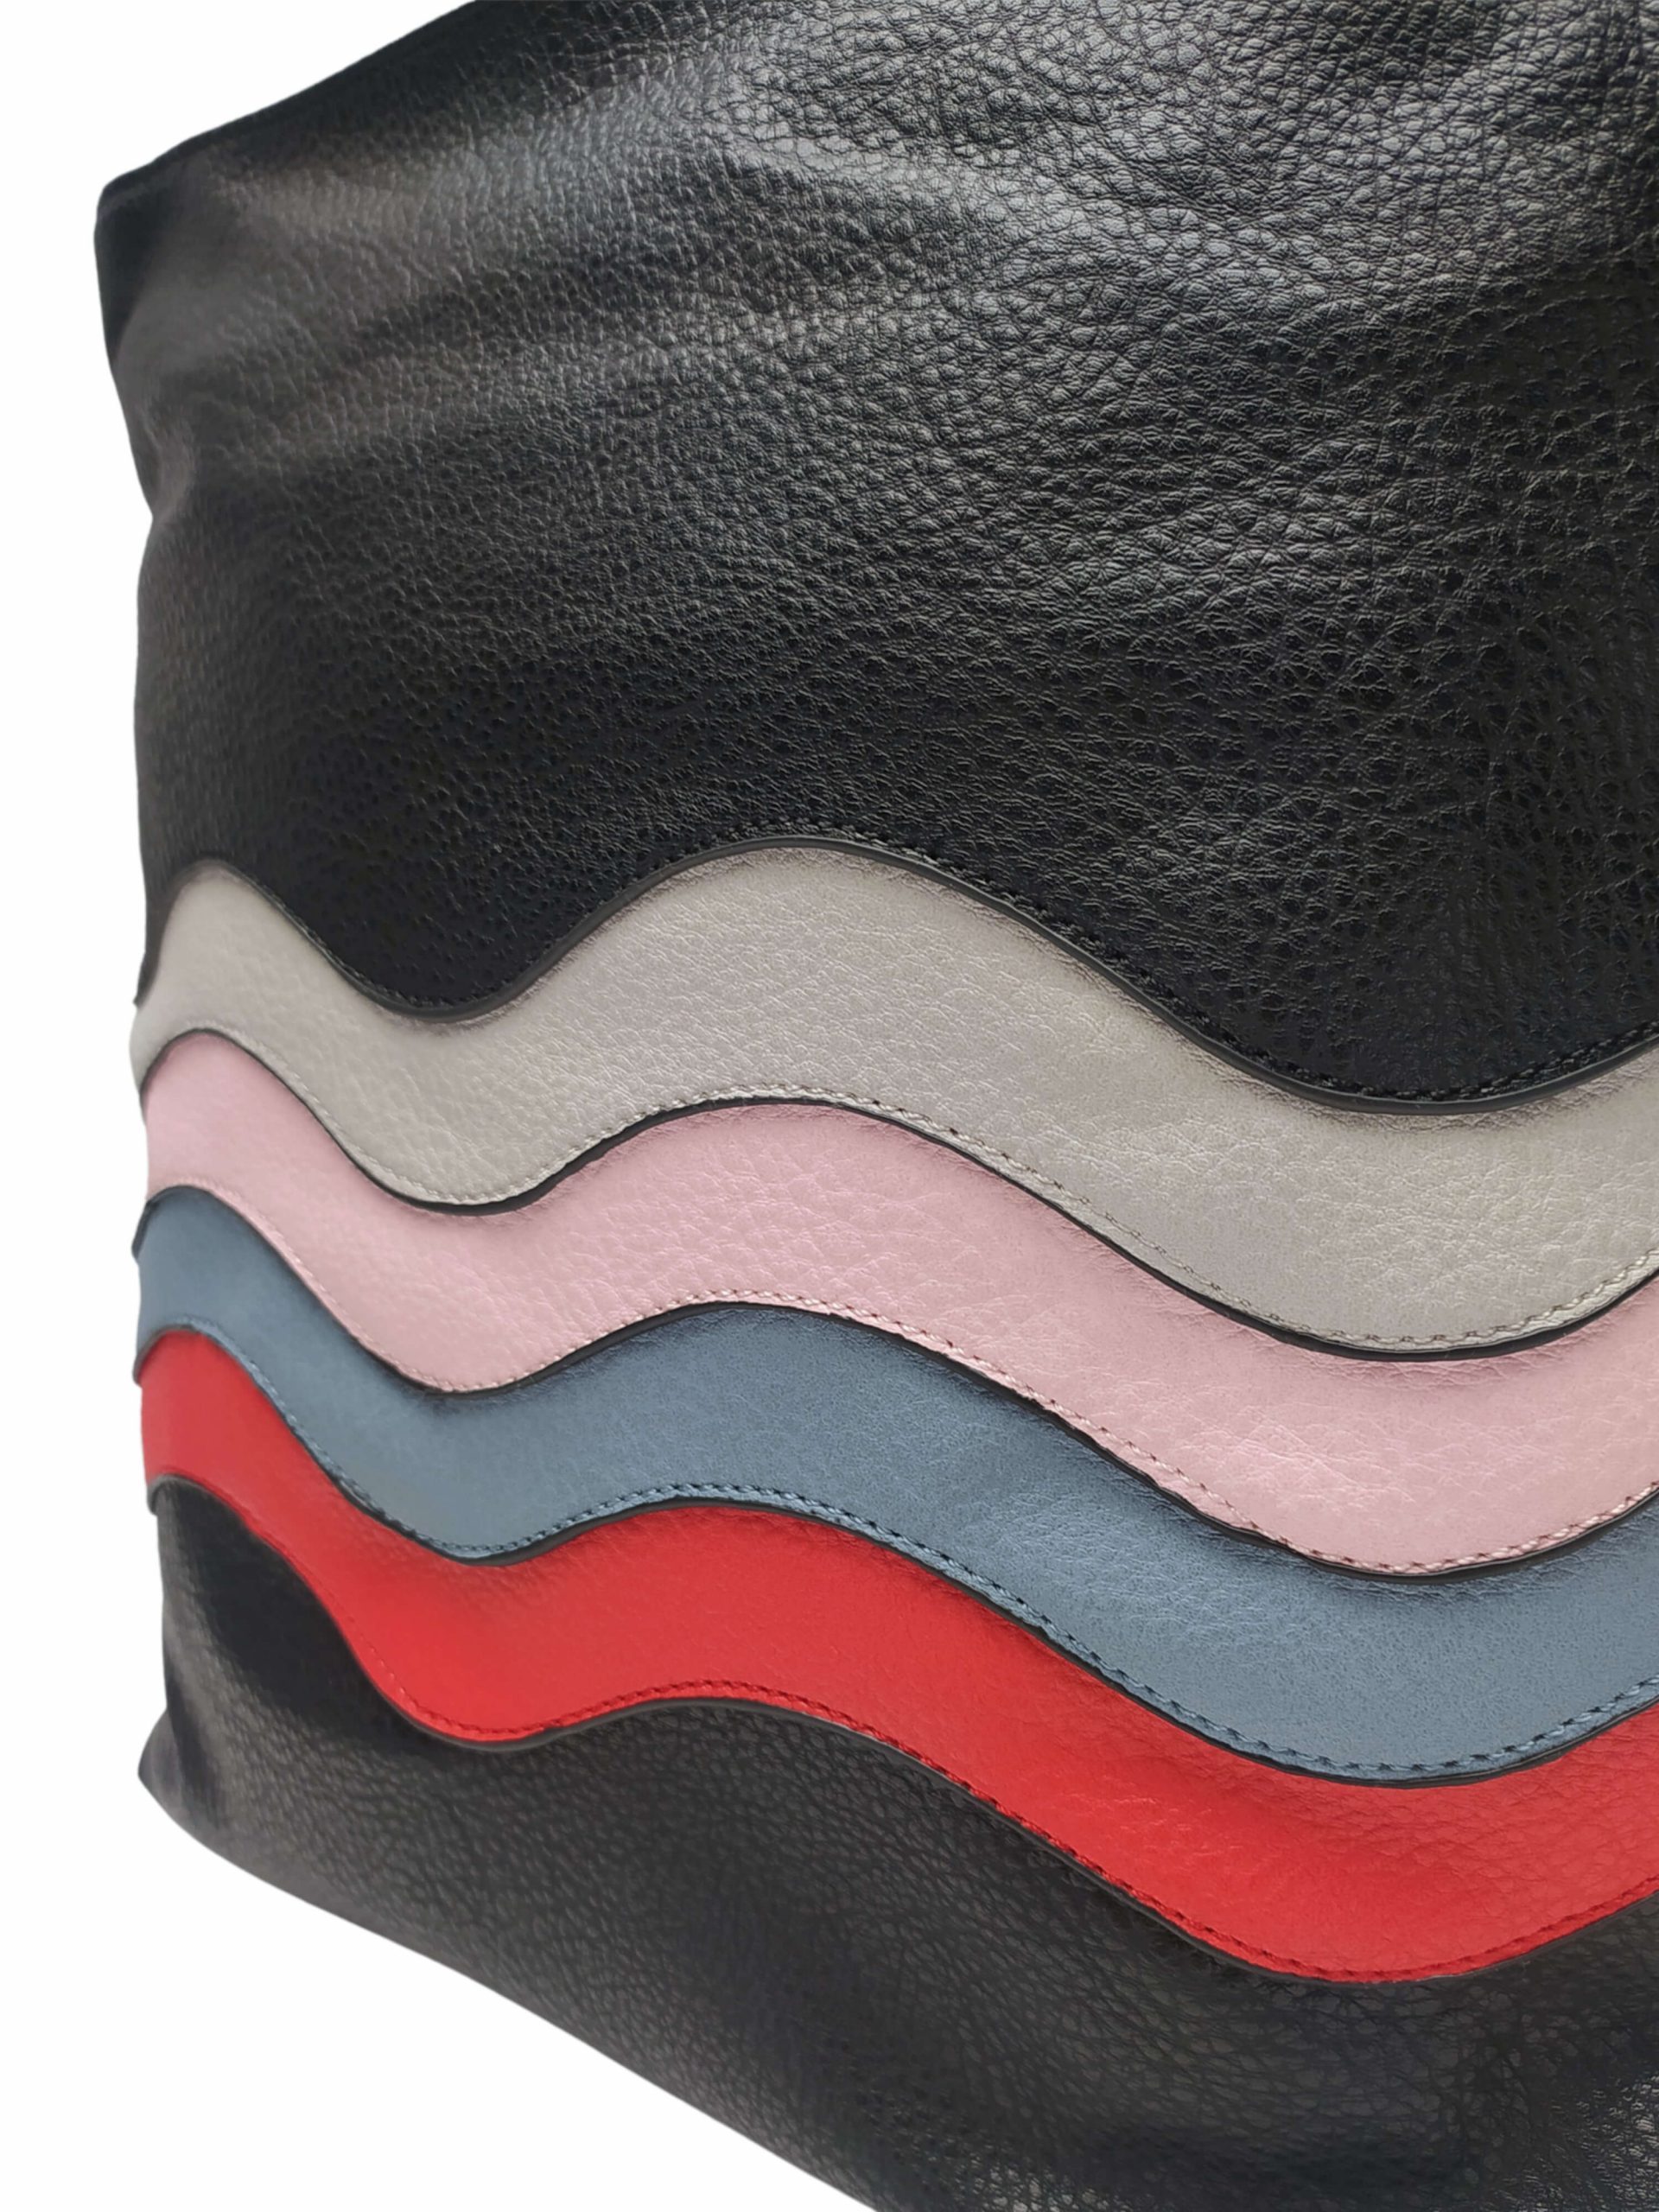 Střední černý kabelko-batoh 2v1 s praktickými bočními kapsami, Miss Moda, 980882, detail kabelko-batohu 2v1